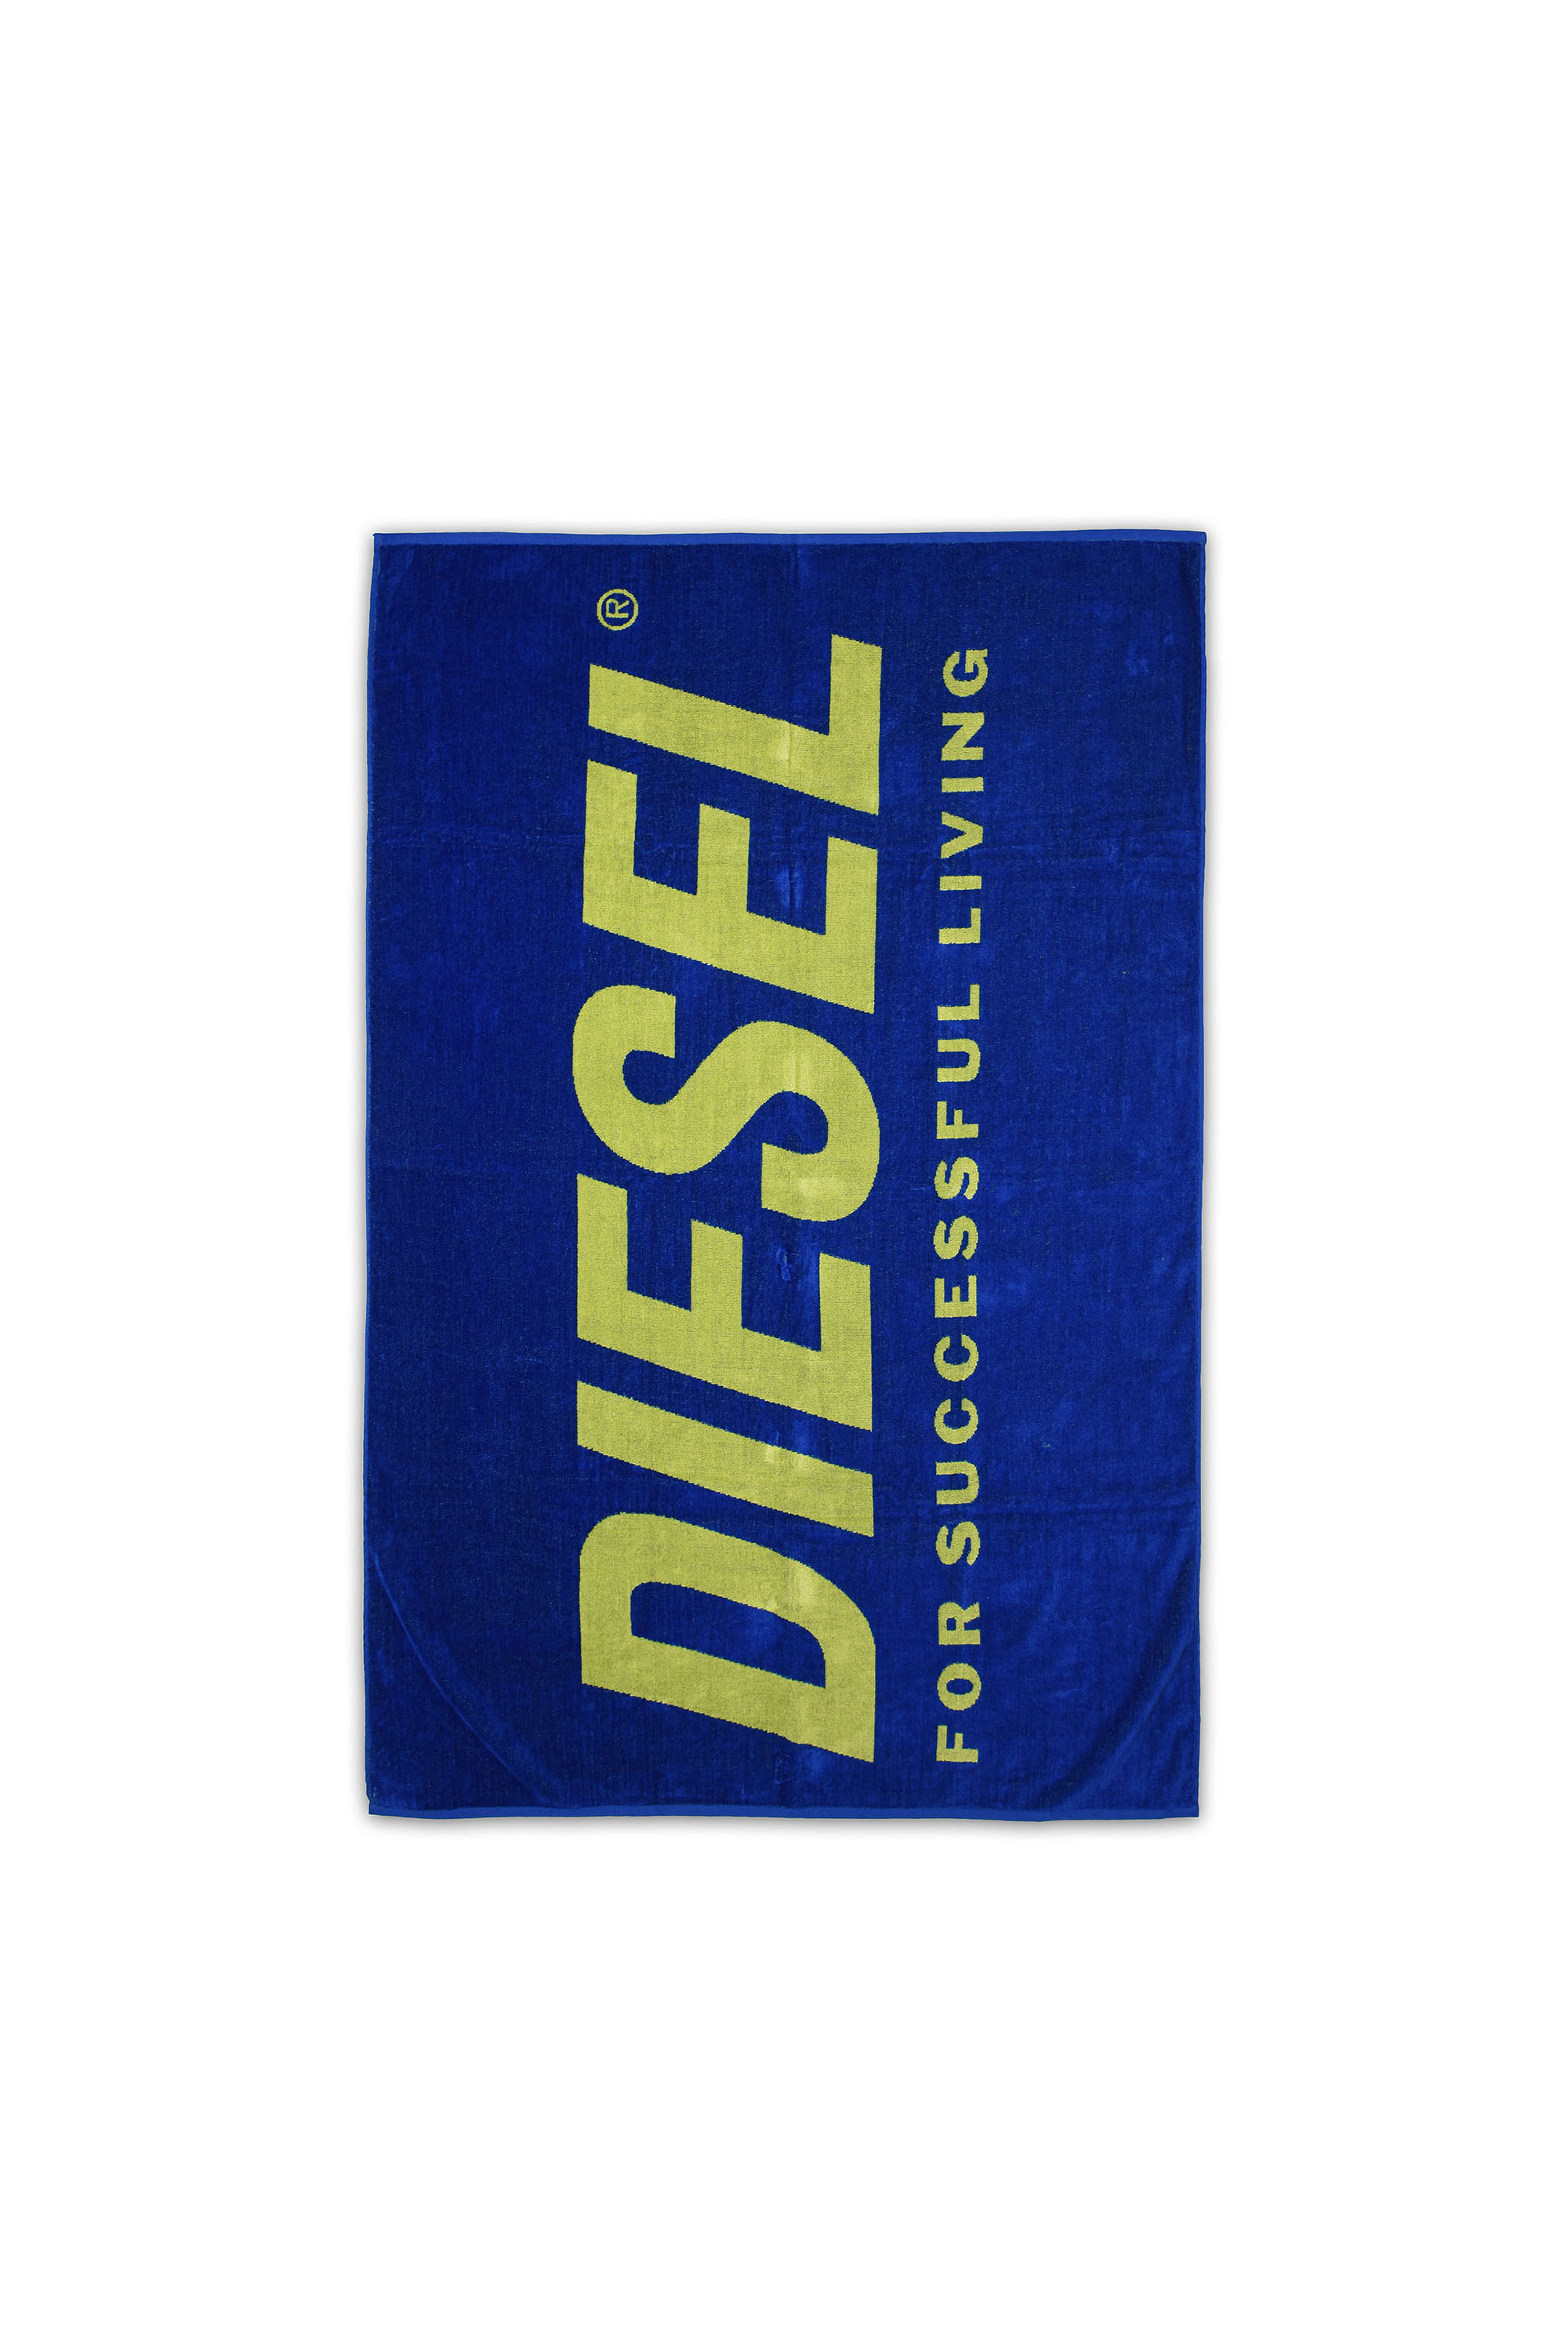 Diesel - HERTY, Blue - Image 1